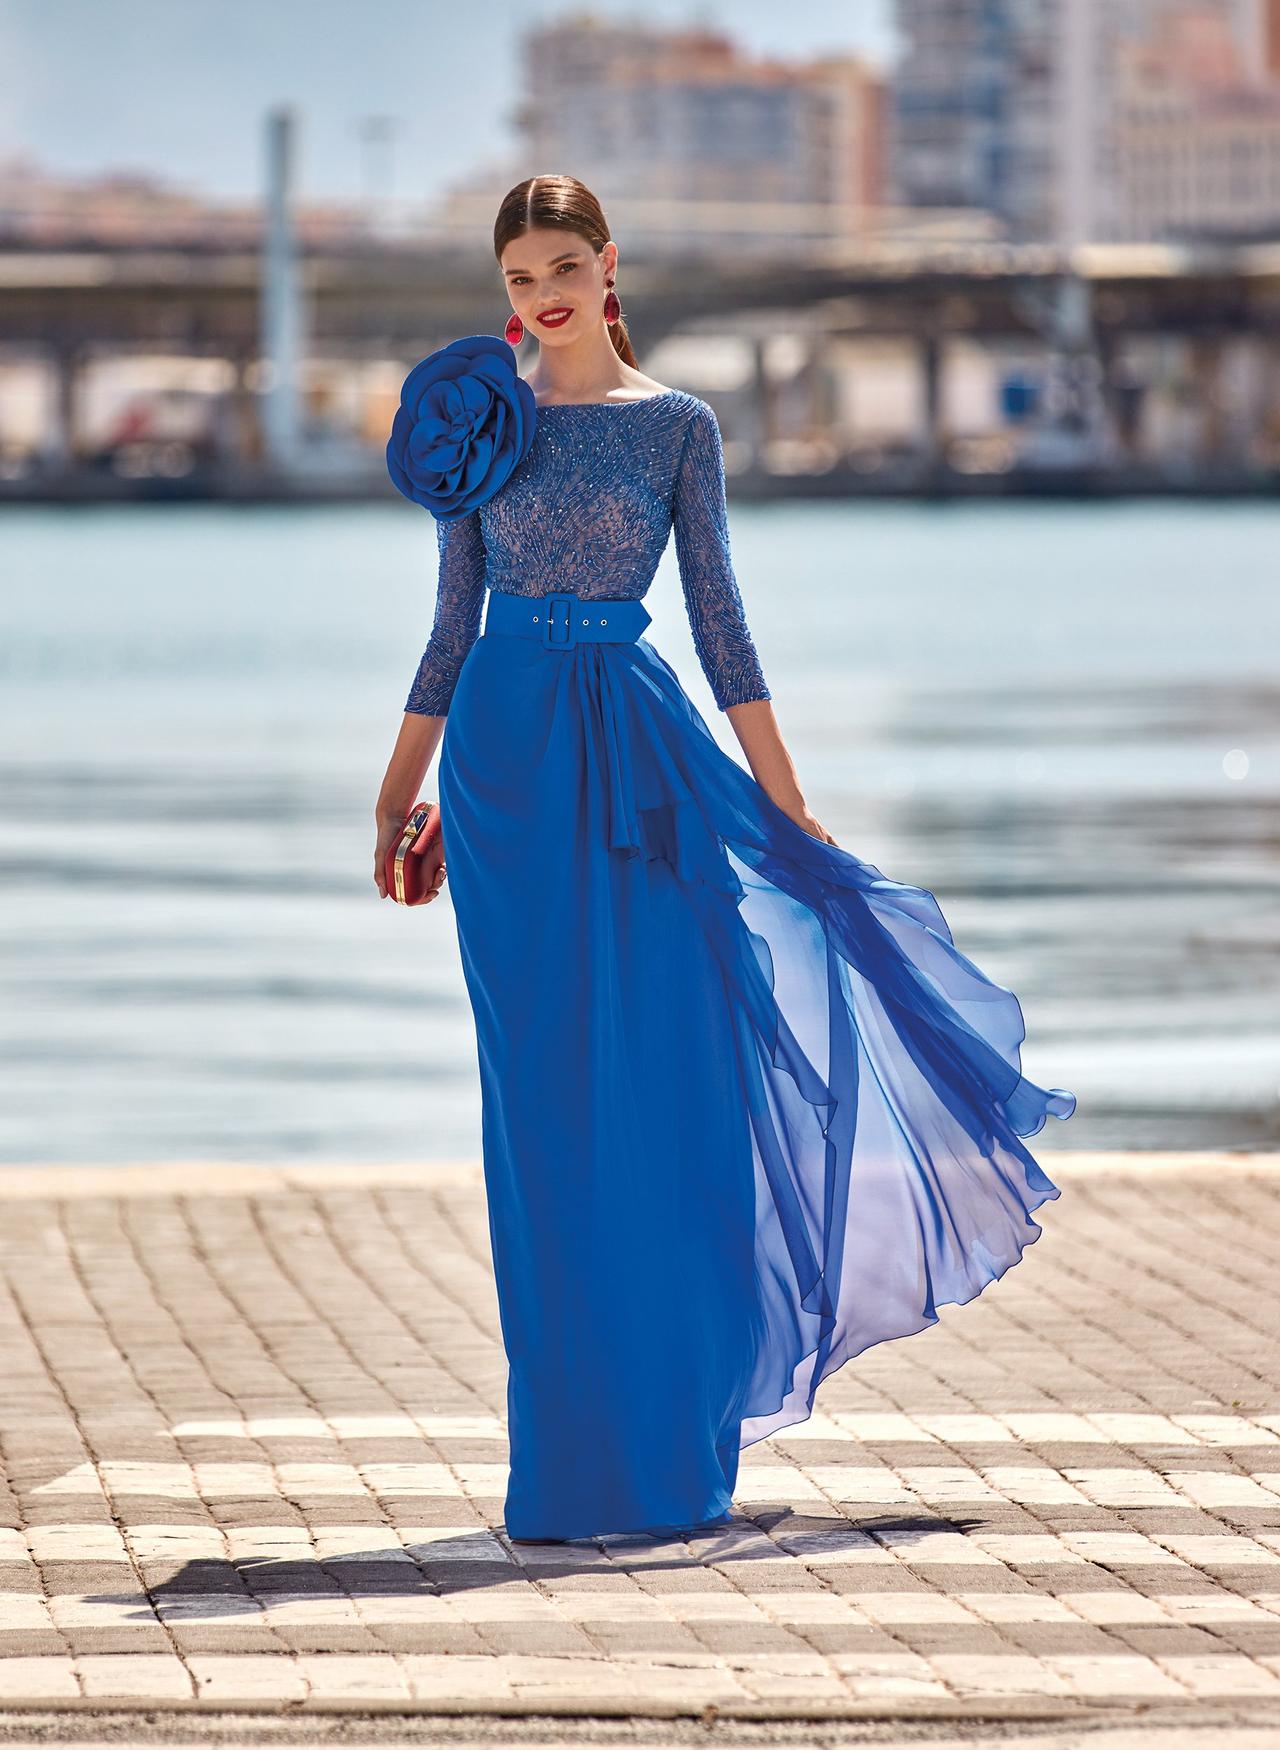 Respeto a ti mismo habilidad Dar derechos 45 vestidos de noche azul rey para brillar como invitada - bodas.com.mx